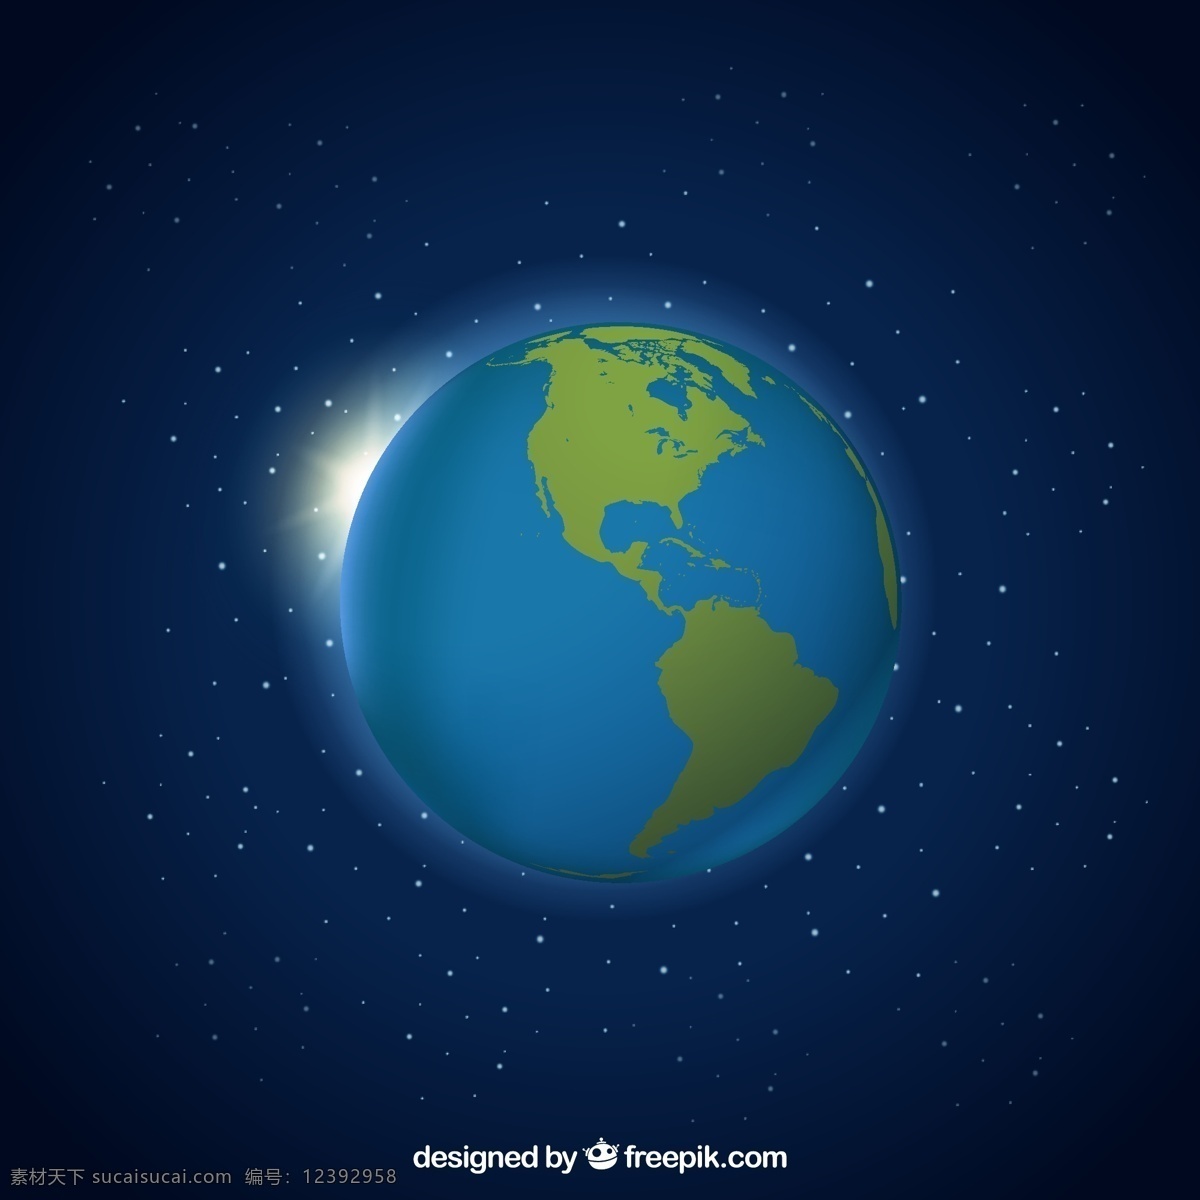 深蓝色 背景 地球仪 地图 蓝色 世界 世界地图 地球 颜色 行星 球体 美国 黑暗 世界地球 明亮 闪亮 地球地球 地理 现实 大陆